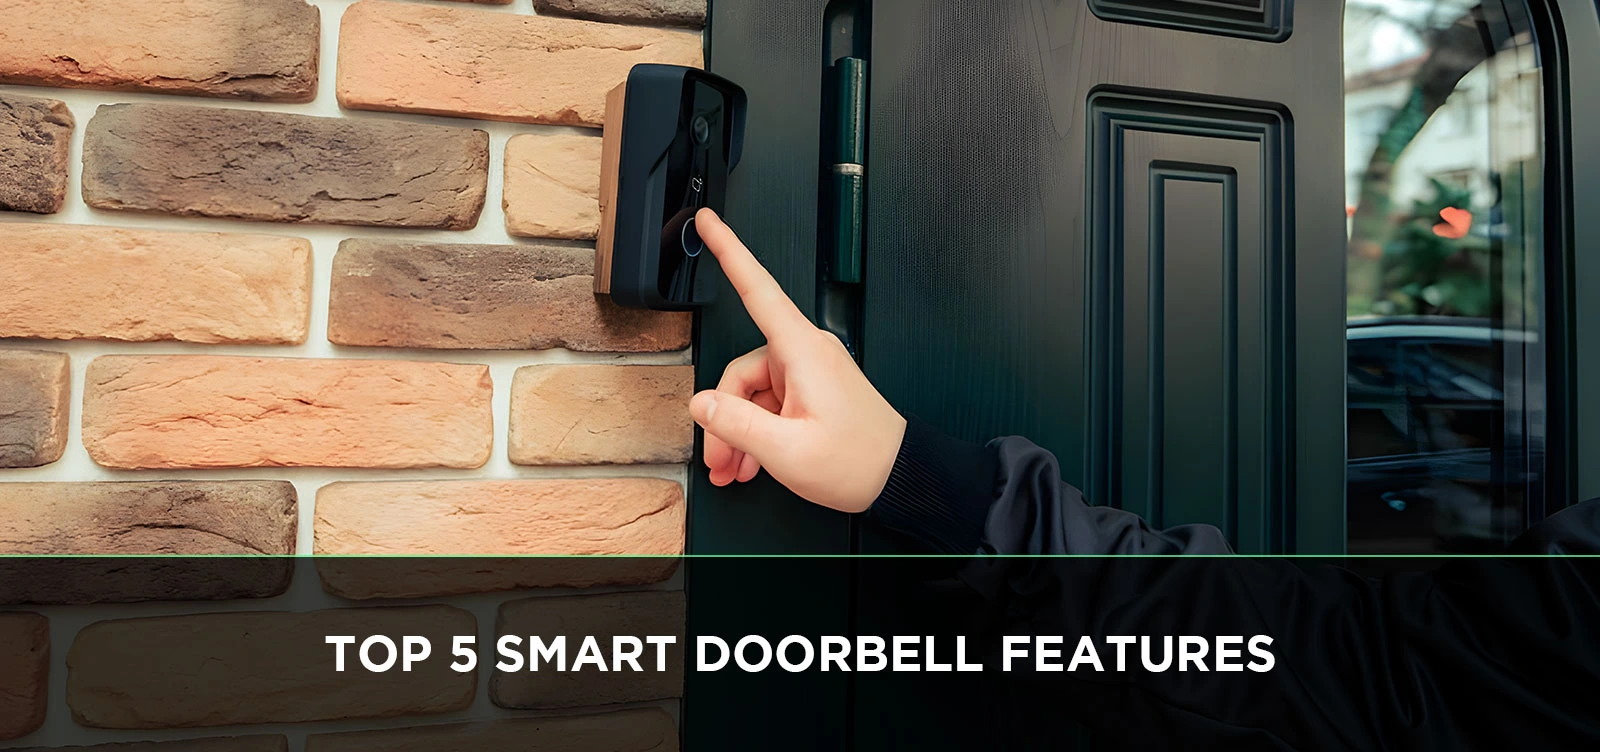 Top 5 Smart Doorbell Features